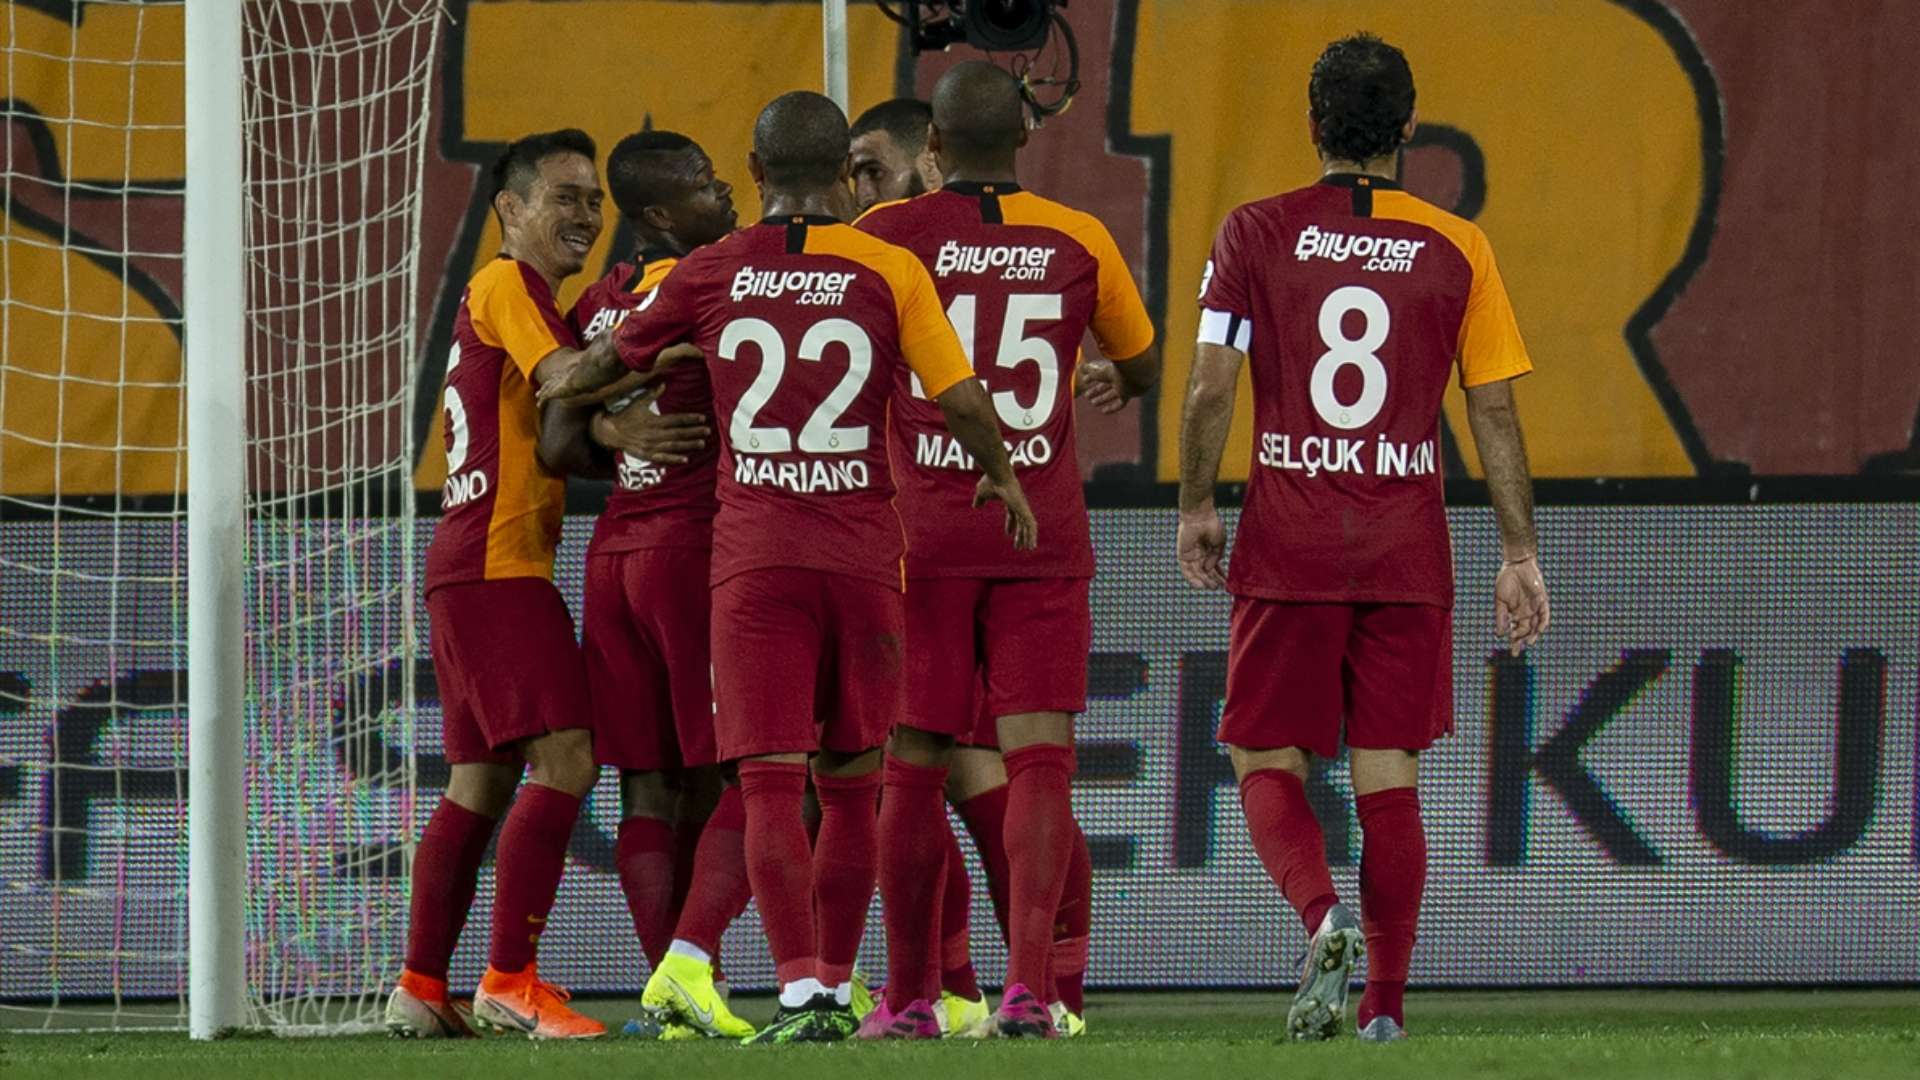 Galatasaray Akhisarspor TFF Super Kupa 08072019